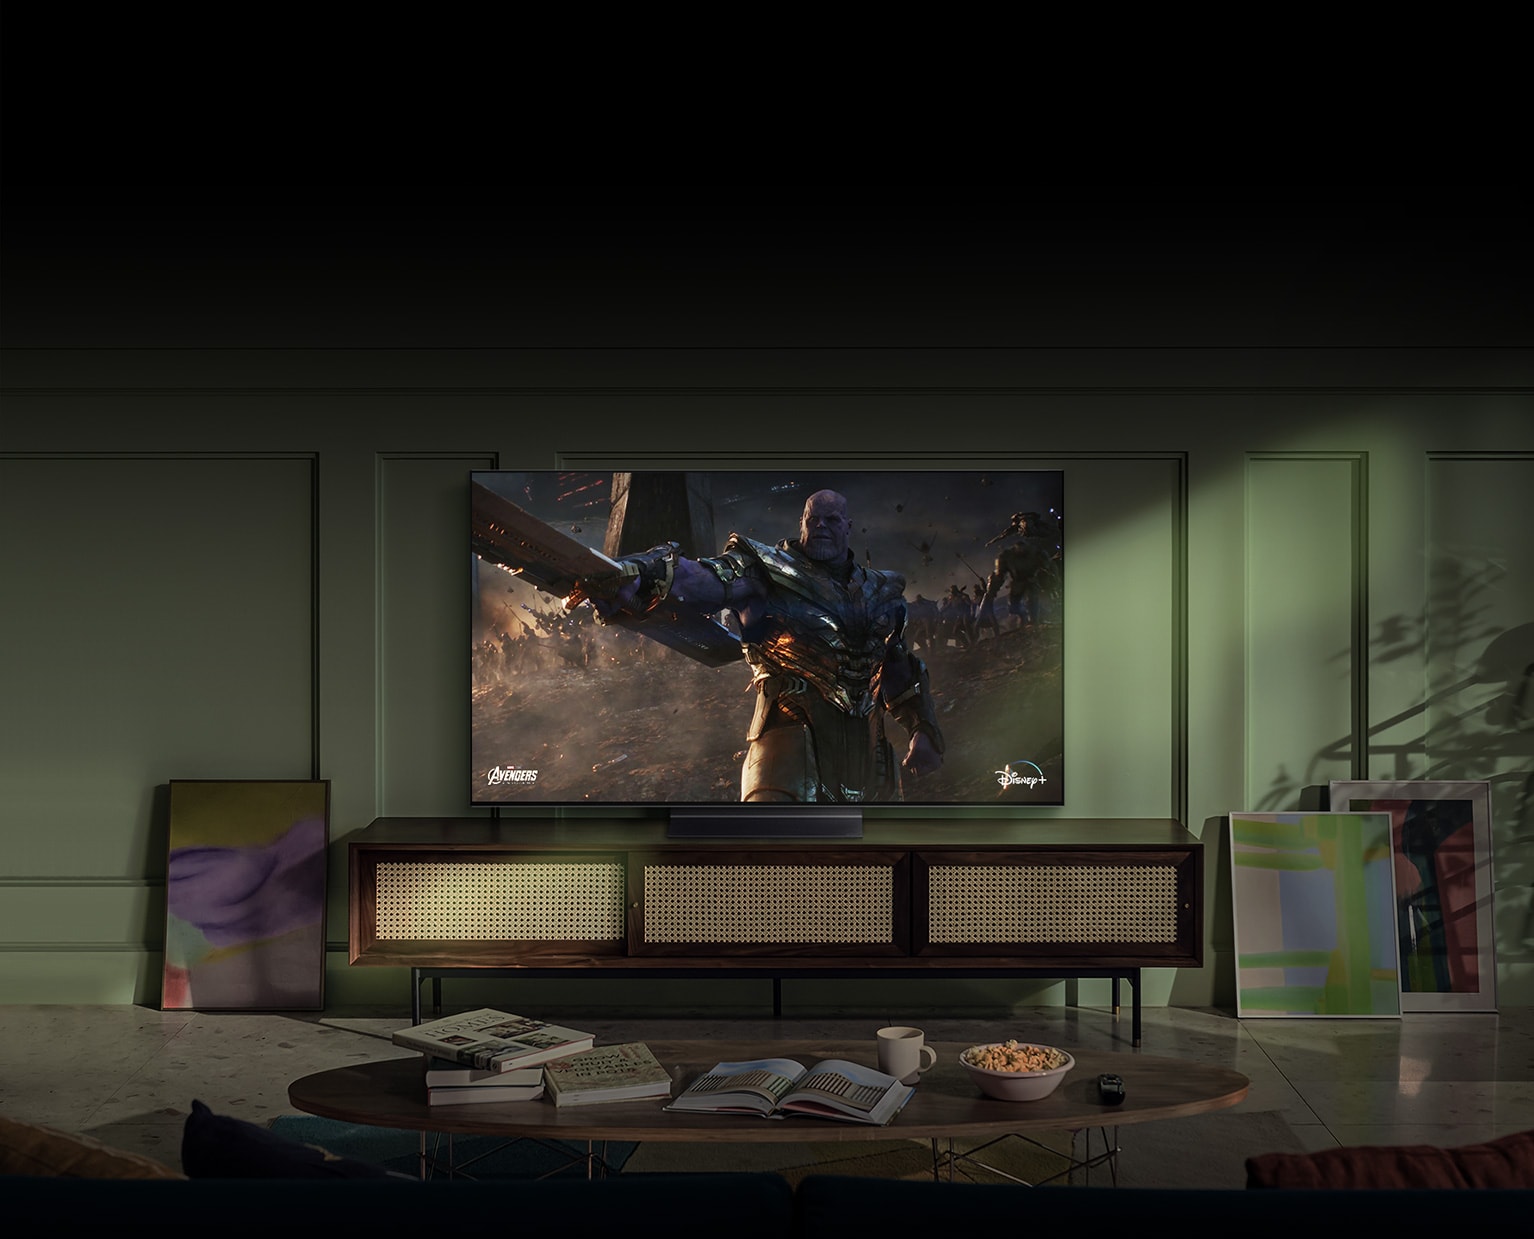 Un TV LG OLED colgado en la pared muestra en su pantalla la escena de una película de acción.